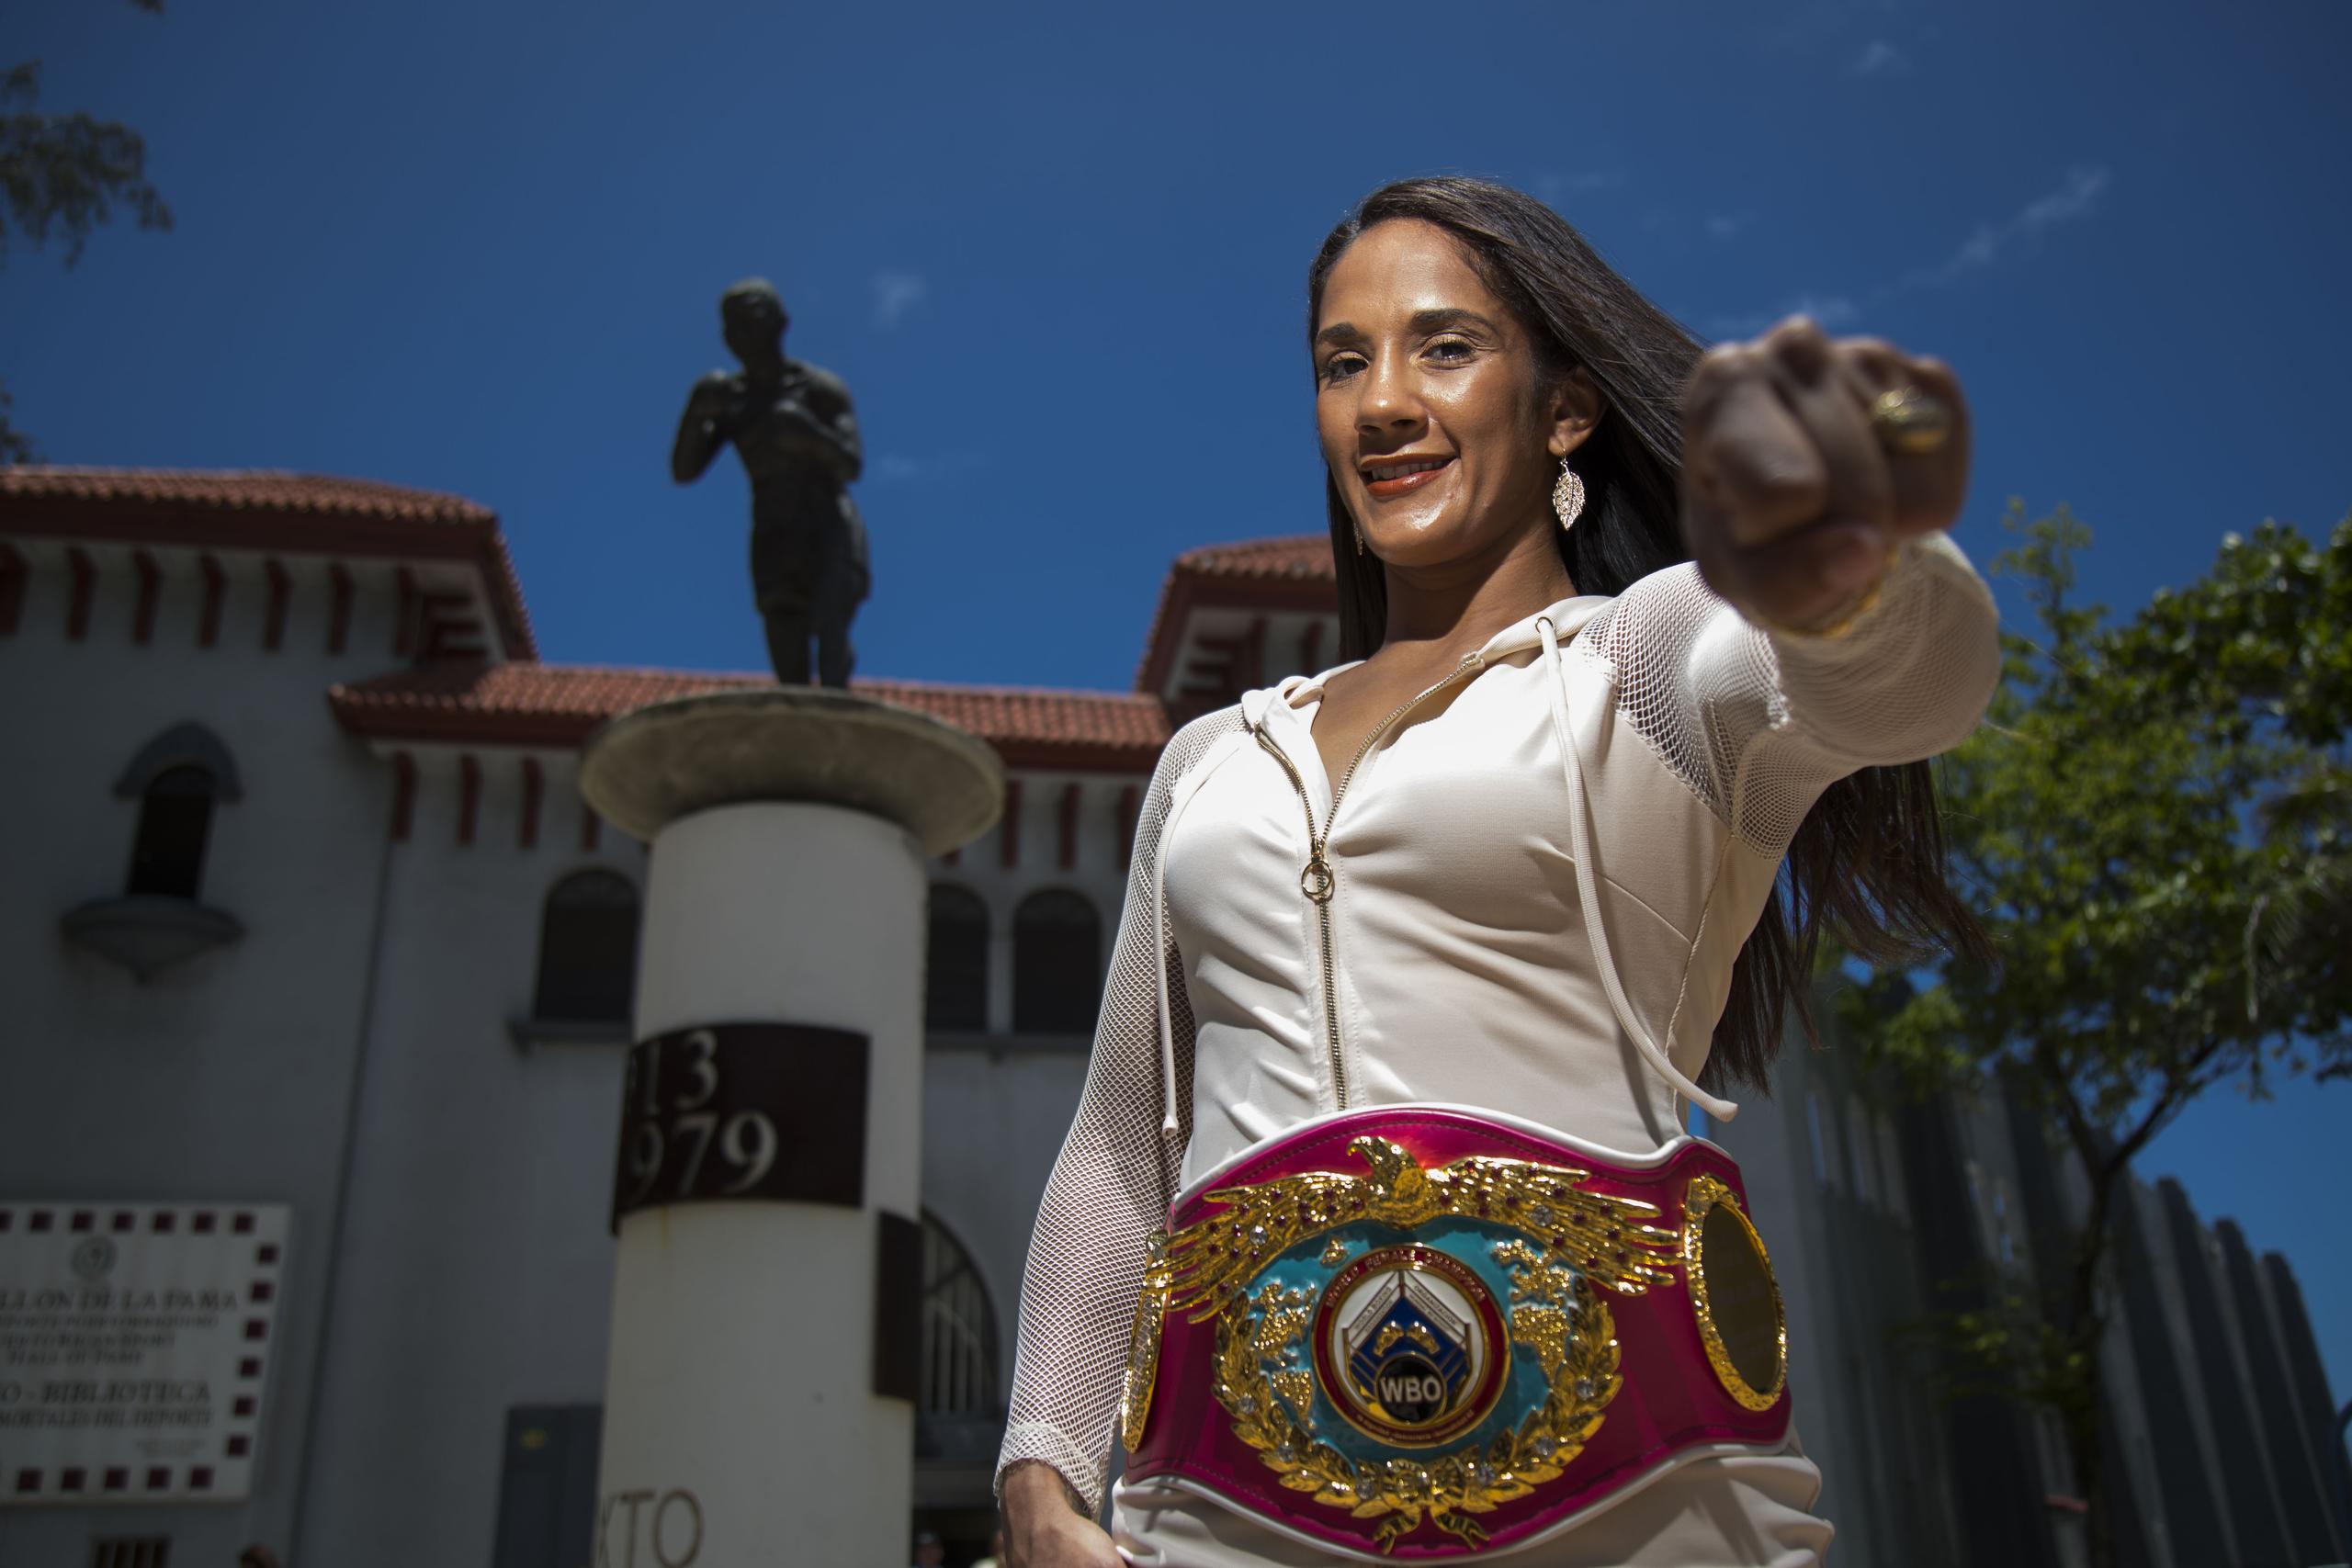 Amanda Serrano es la primera mujer que alcanza la cifra de siete campeonatos mundiales en el boxeo rentado.